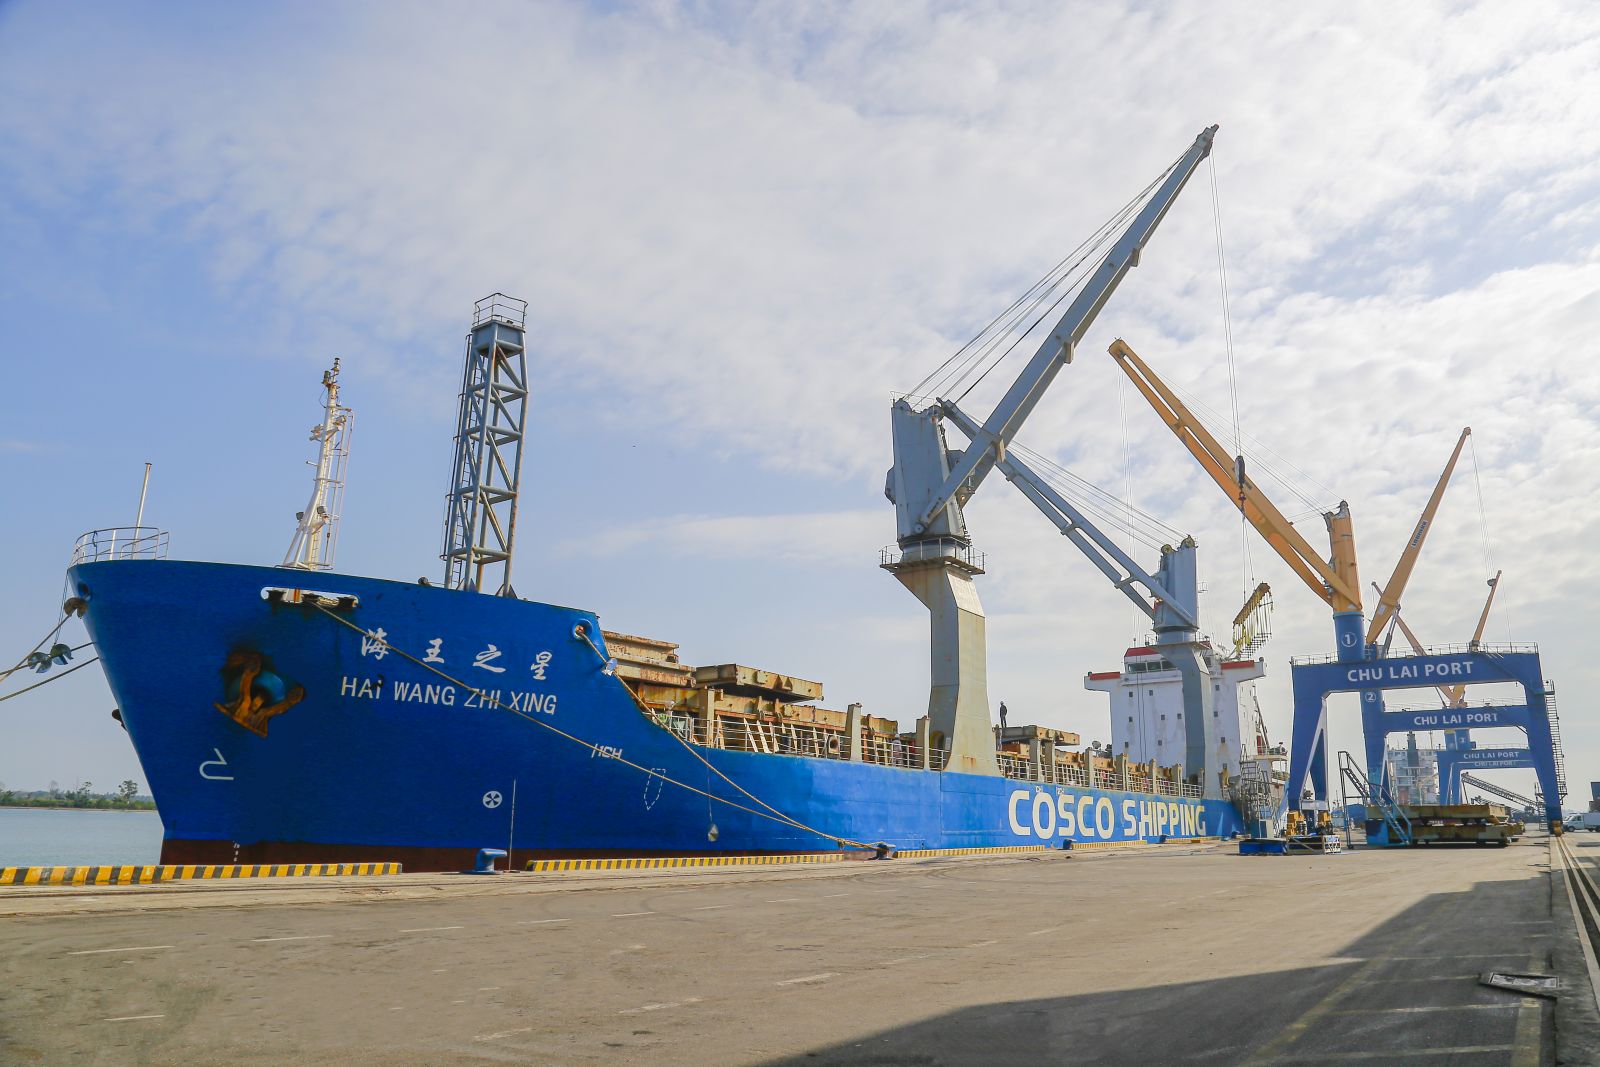 Tàu Hai Wang Zhi Xing (COSCO) cập cảng Chu Lai vận chuyển bột giấy xuất khẩu.